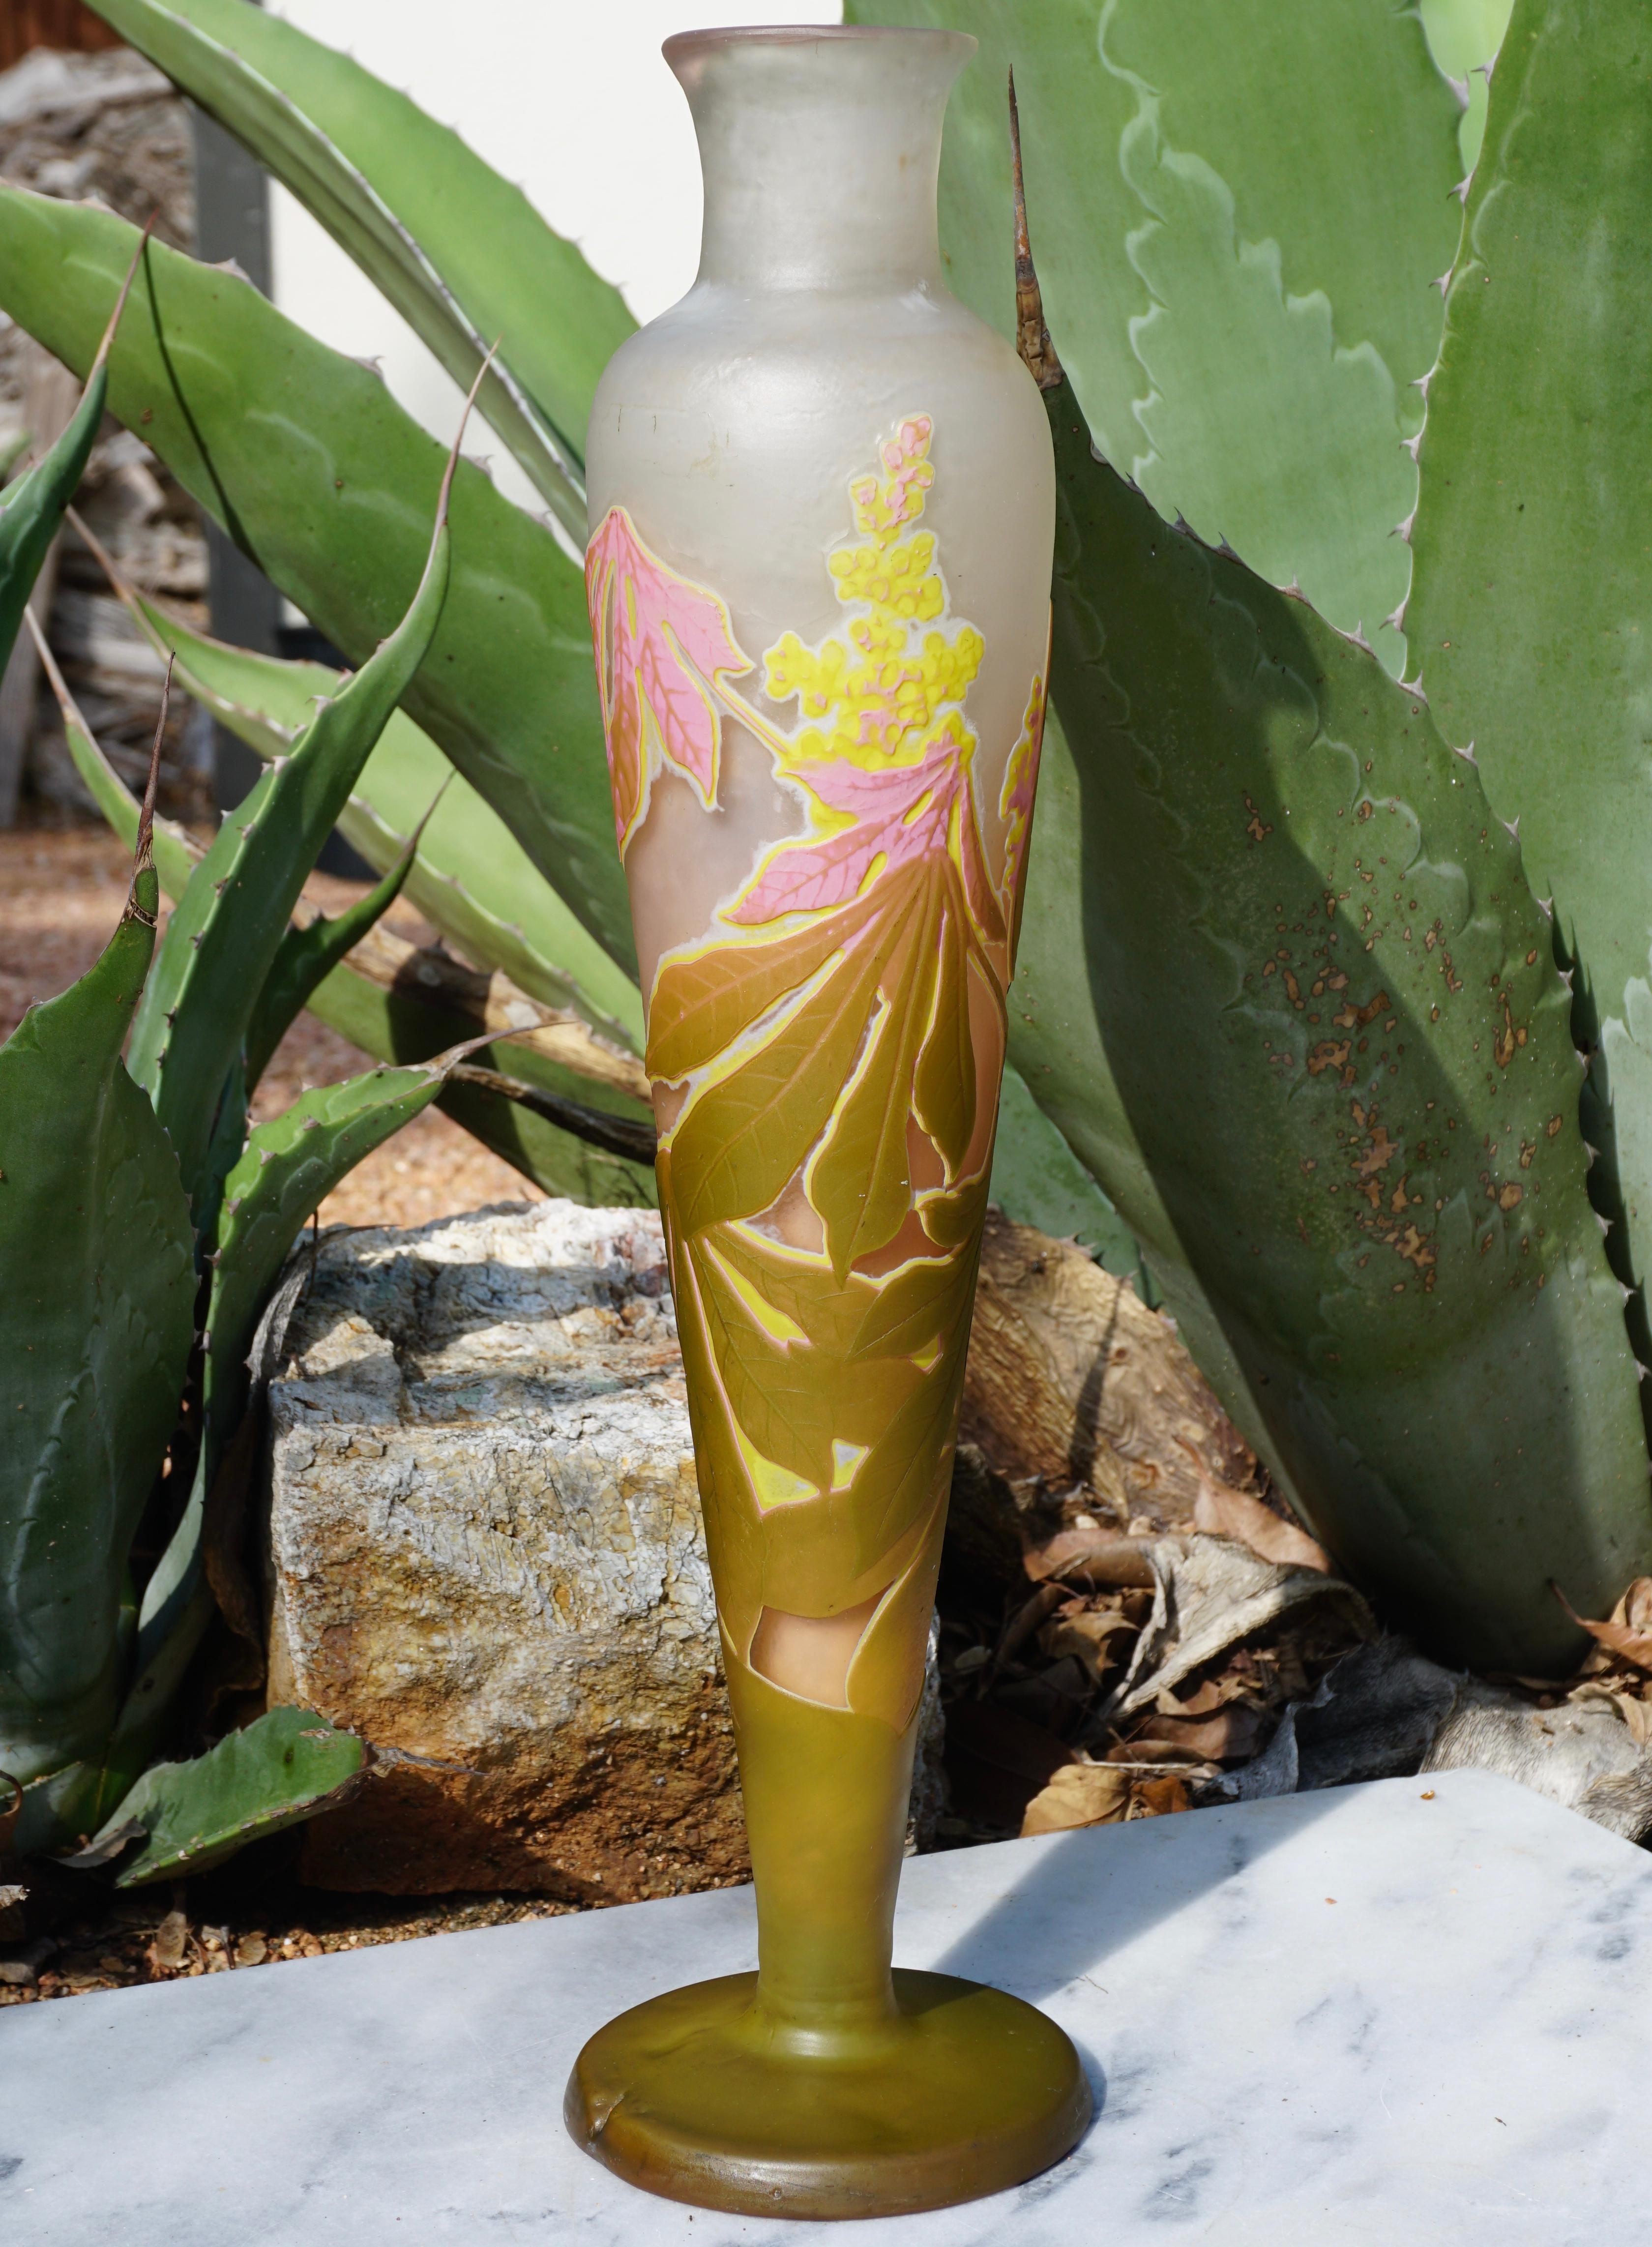 Eine atemberaubende vier Farben Rad geschnitzt und Säure geätzt Fett Vase mit rosa, gelb, grün und weiß auf einem cremefarbenen Hintergrund. Die Farbgebung ist kräftig und die Verarbeitung hervorragend. Ein wahrhaft explosiver Ausdruck blühender und